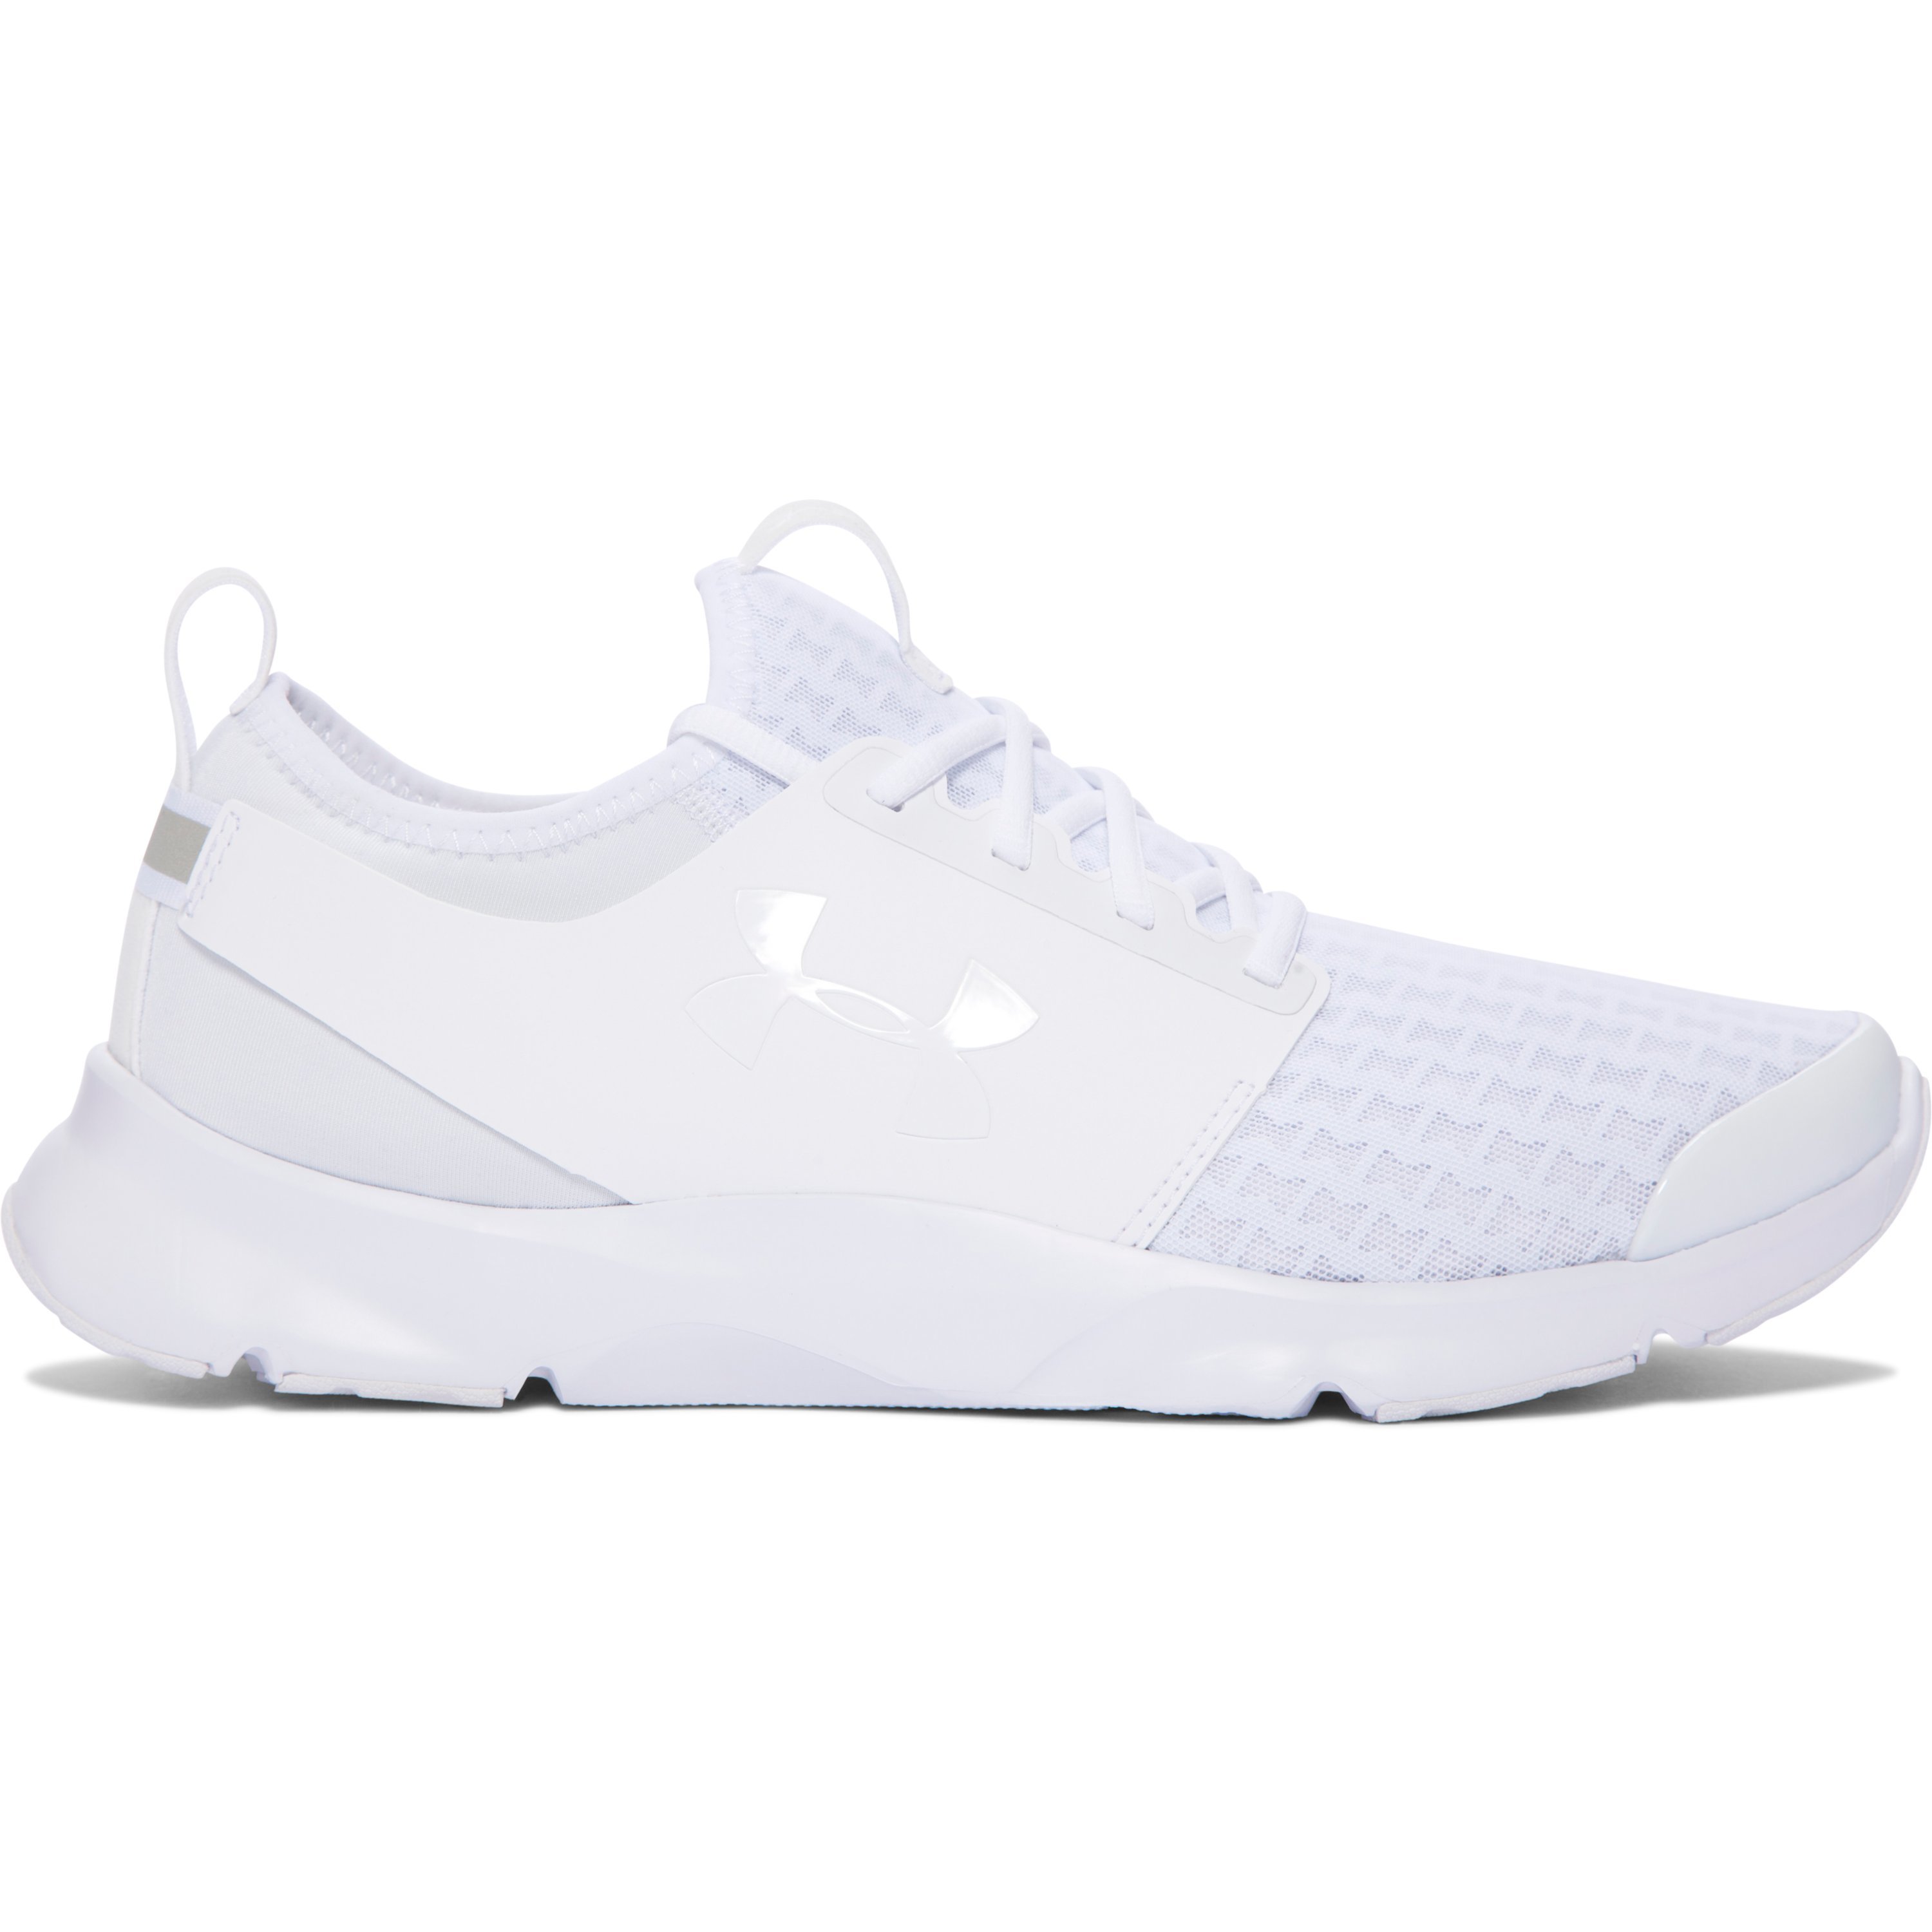 Under Armour Synthetic Men's Ua Drift Running Shoes in White/White (White)  for Men | Lyst